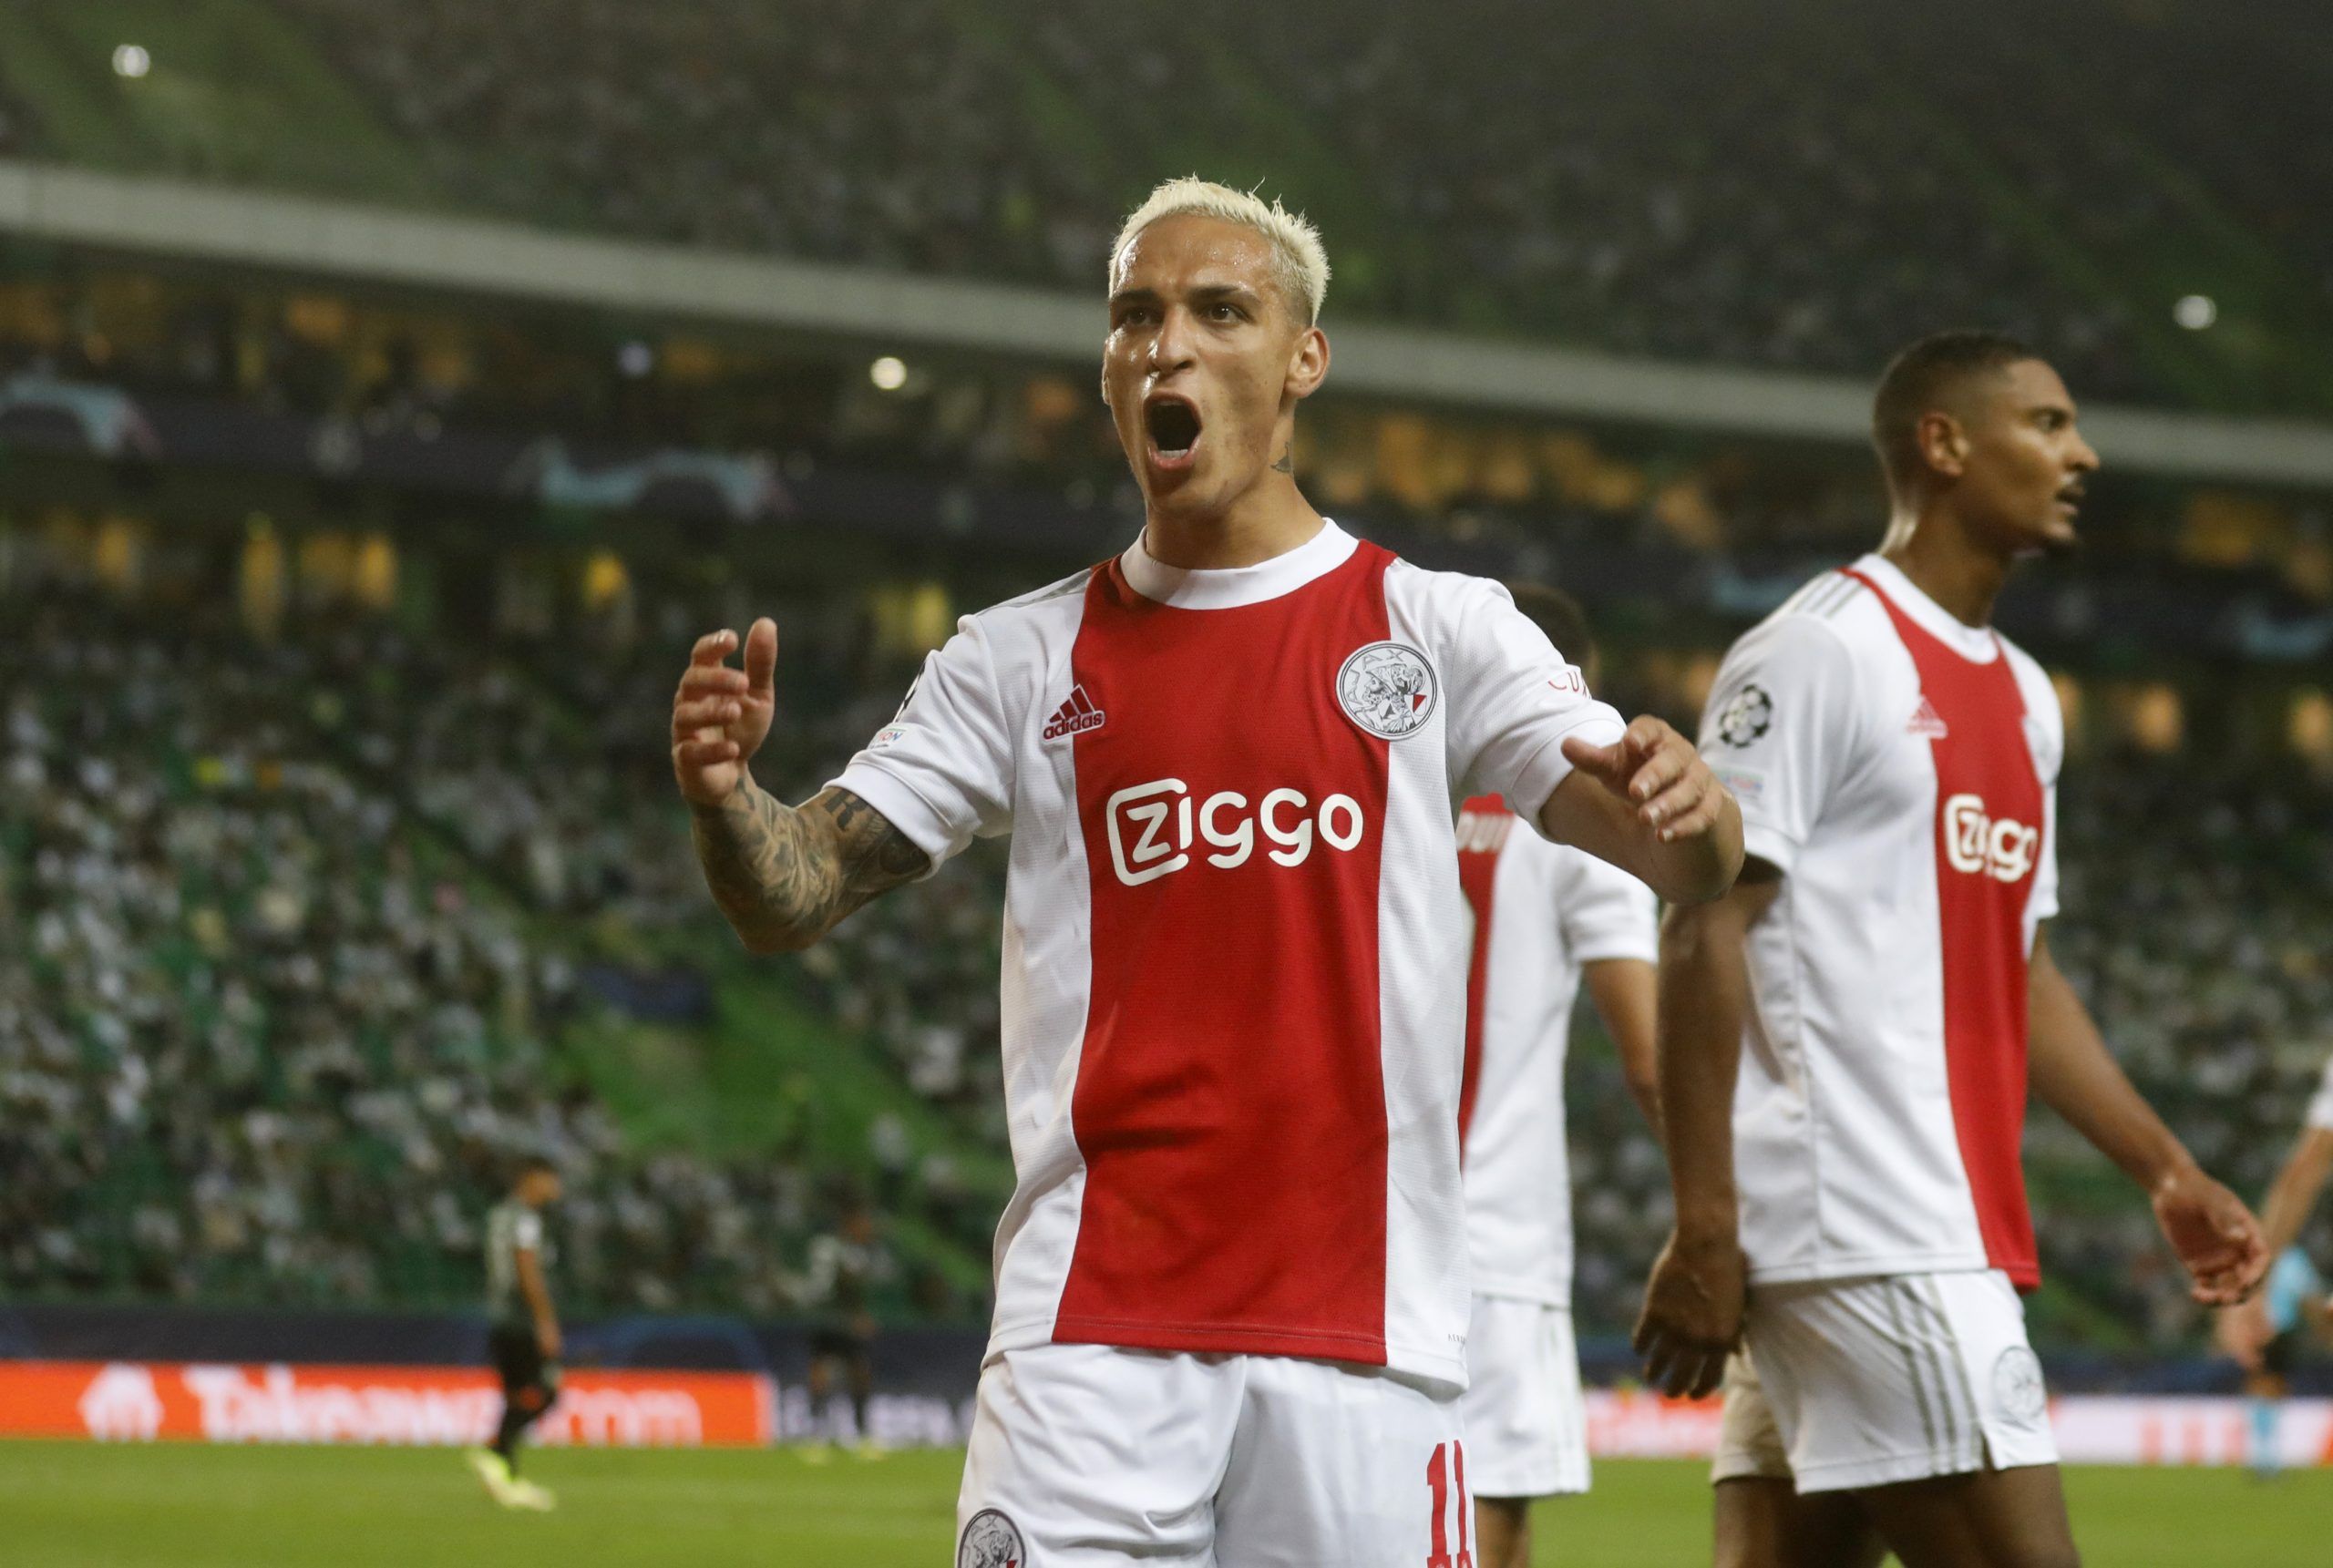 Antony-Ajax-United-Ten-Hag-Van-Nistelrooy-Premier-League-transfer